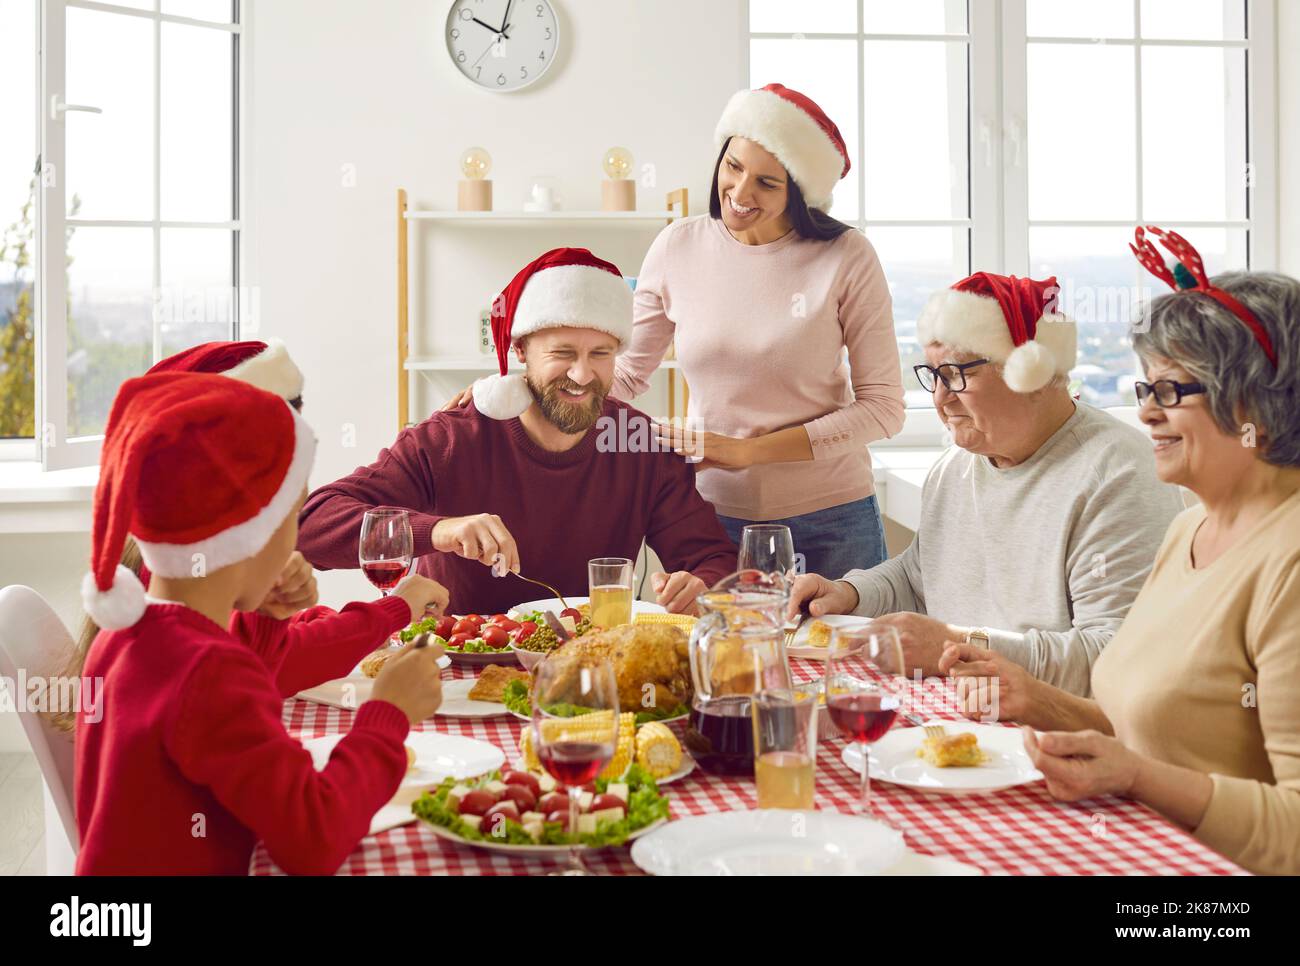 Die junge Frau kümmert sich zu Hause während der traditionellen Weihnachtsfeiertage um ihre Familie. Stockfoto